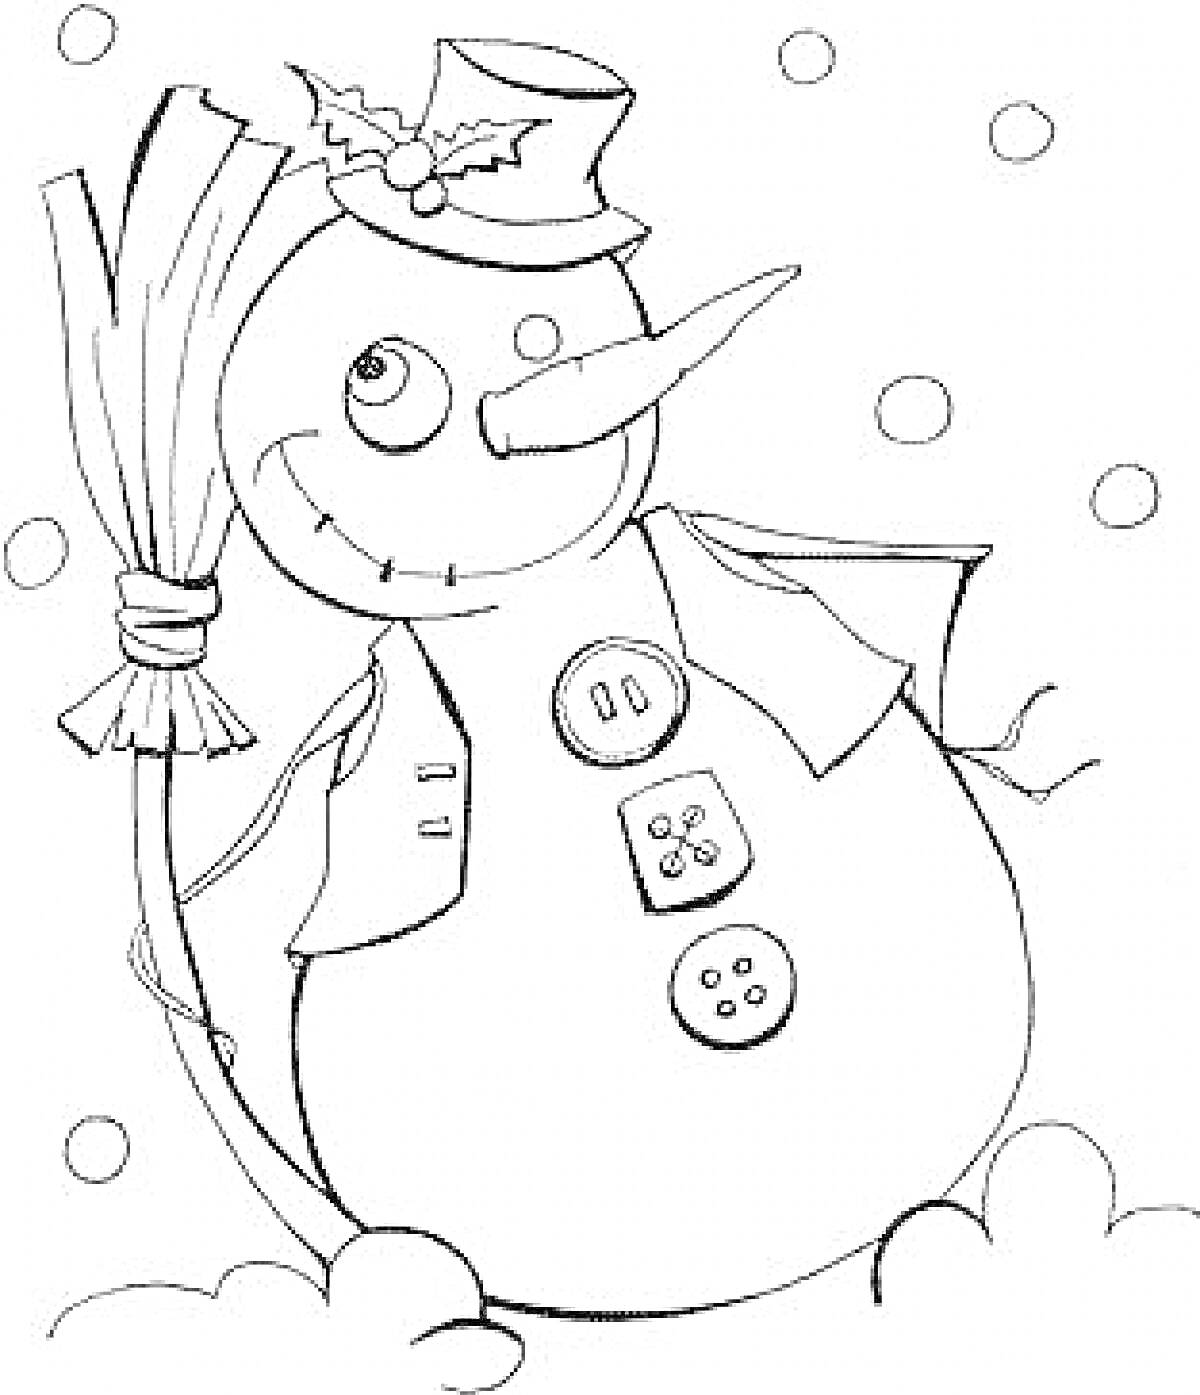 Снеговик с метлой в шляпе с веткой остролиста и пуговицами, на фоне падающего снега